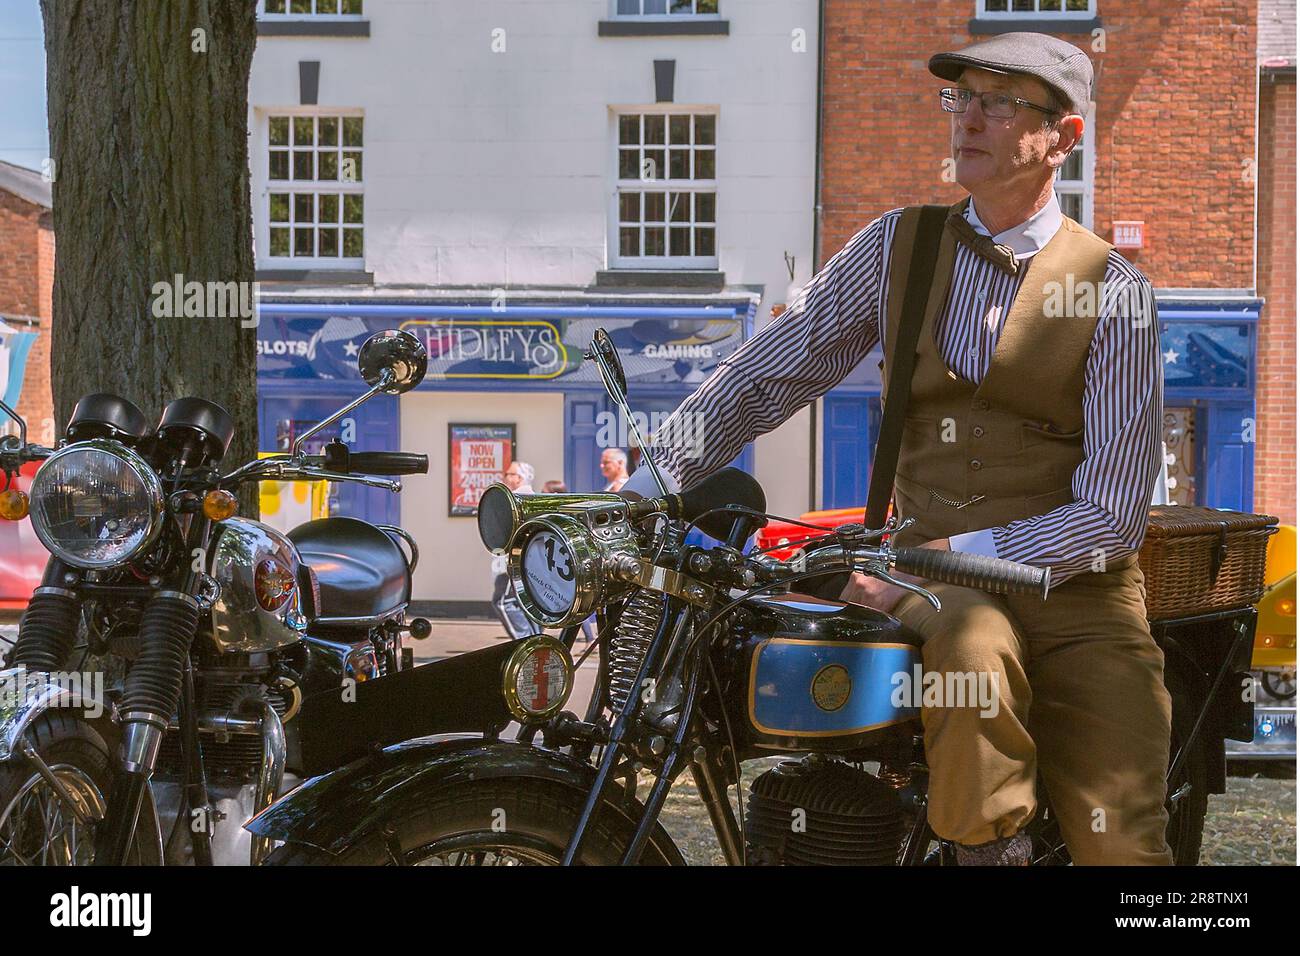 Un ritratto dell'orgoglioso proprietario di una motocicletta Triumph Model NSD in piedi accanto alla sua motocicletta mentre indossa un costume d'epoca. Moto d'epoca. Foto Stock